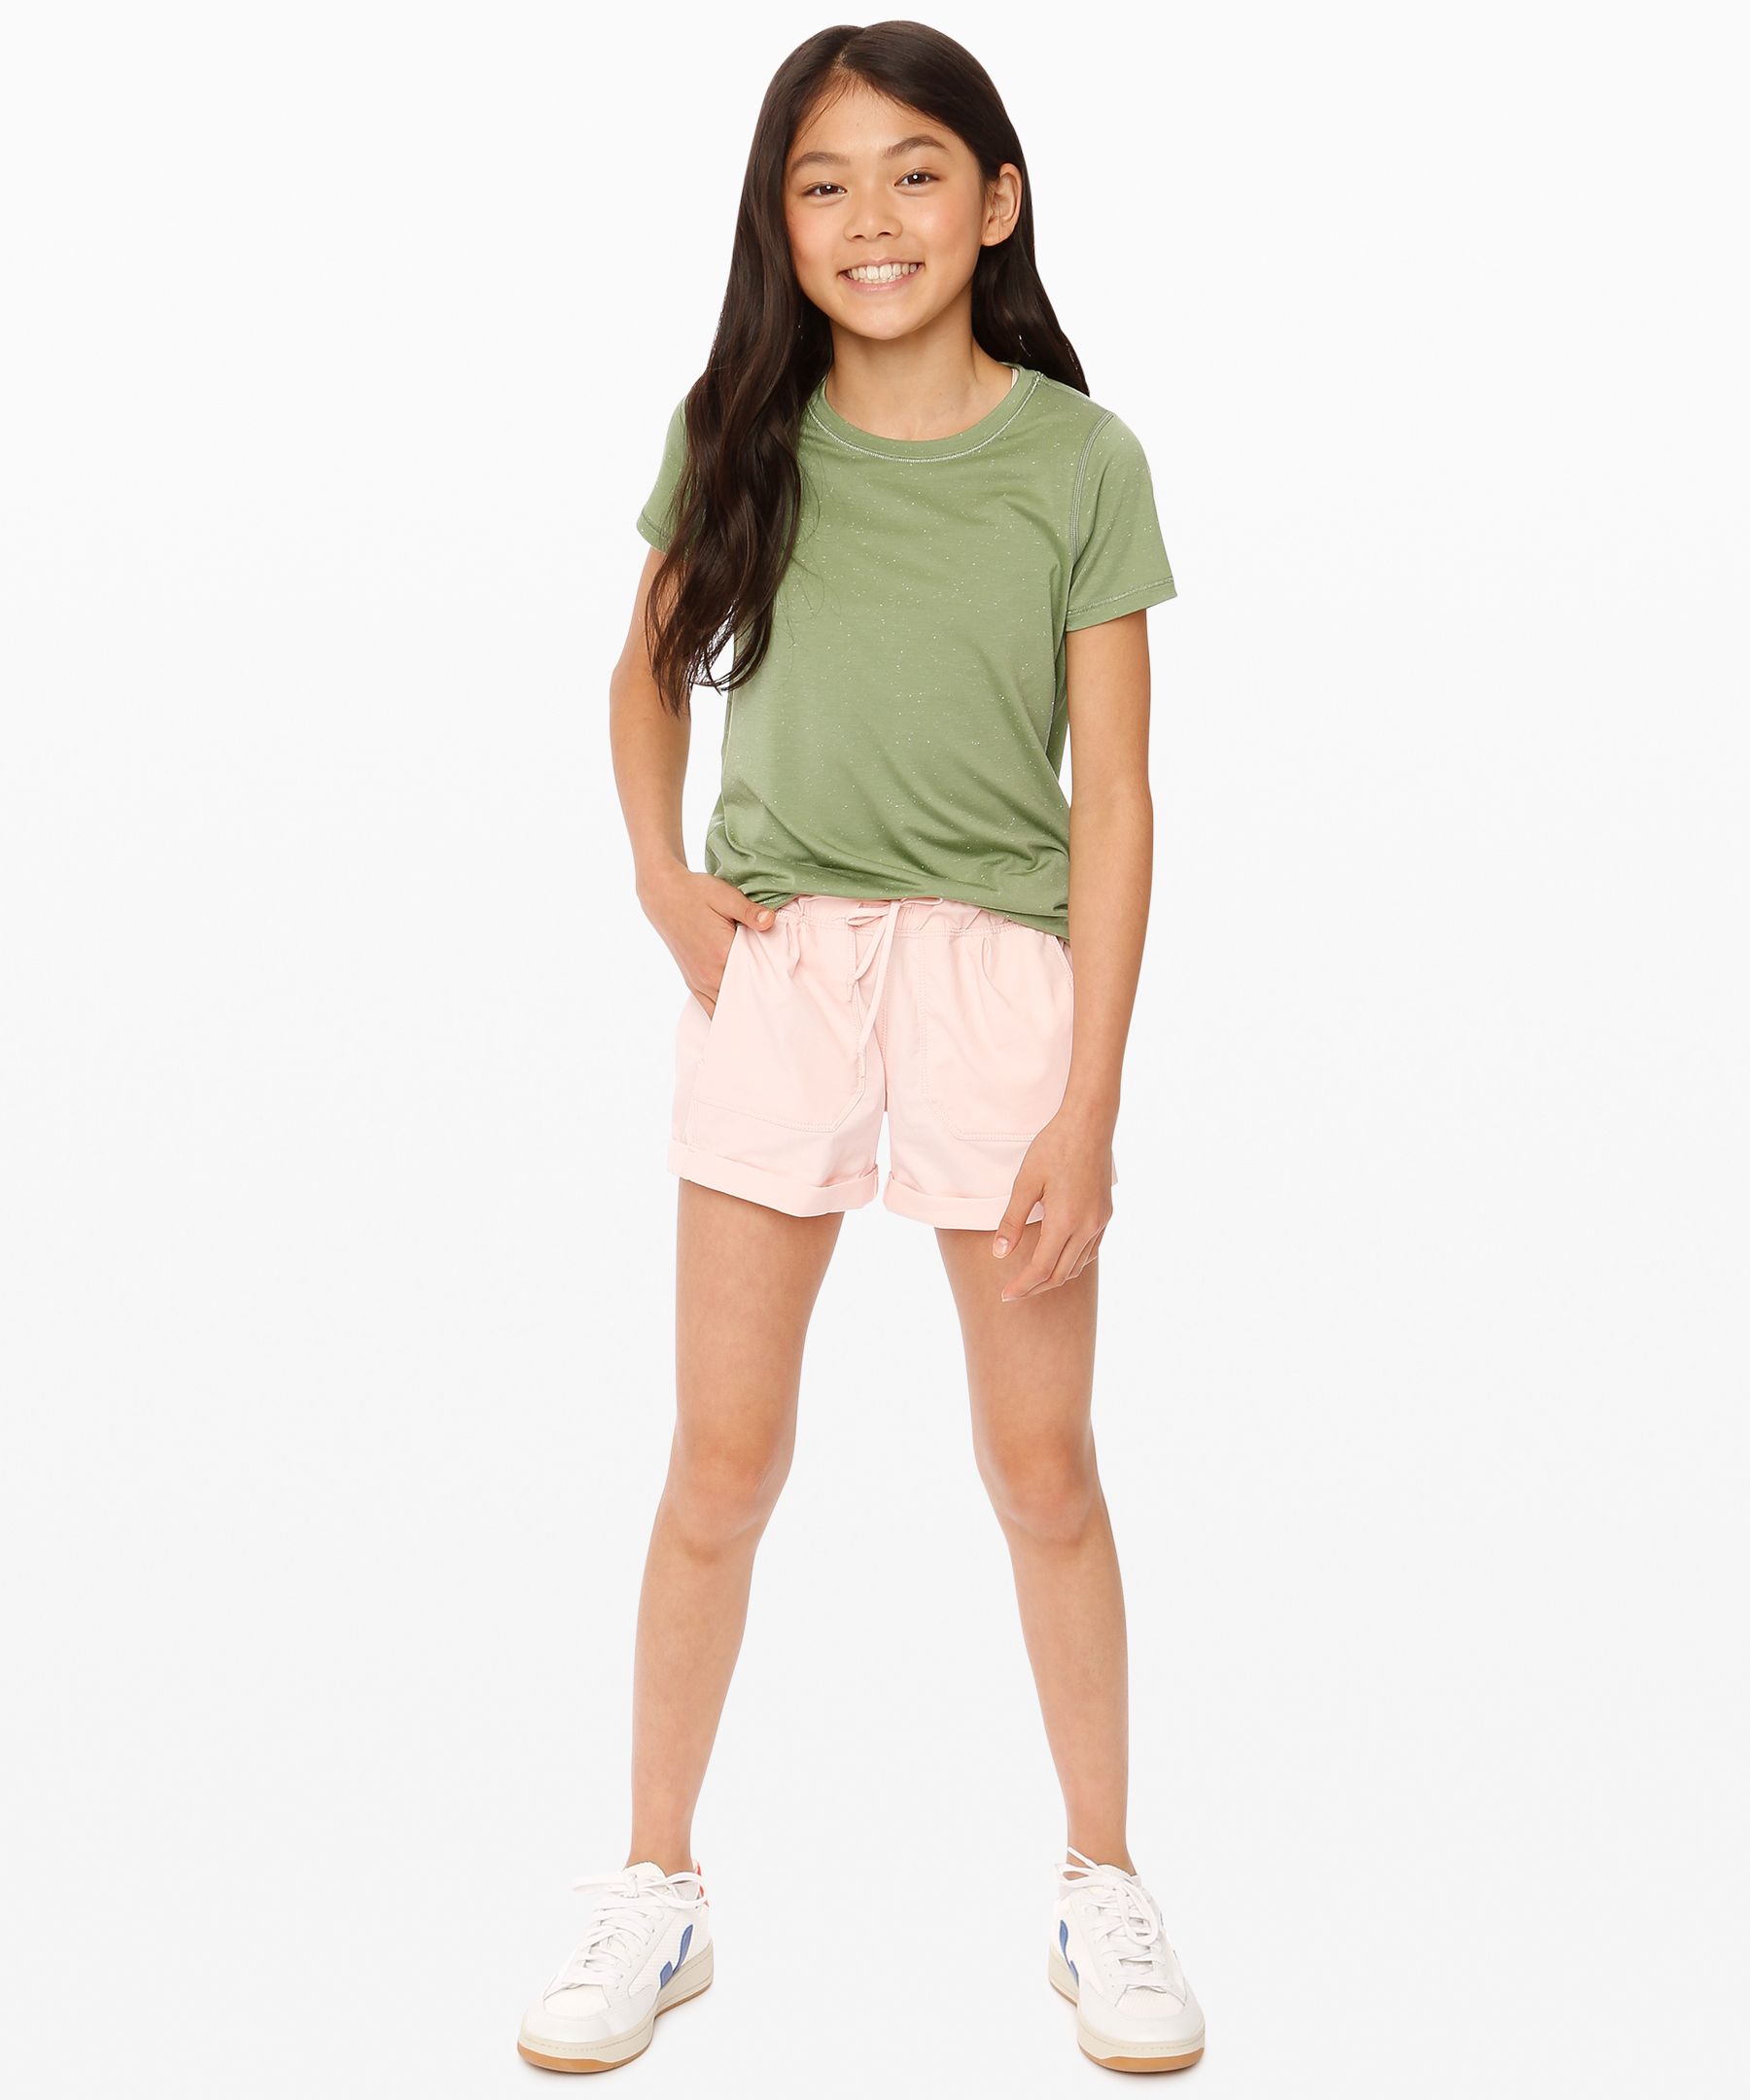 lululemon shorts for girls